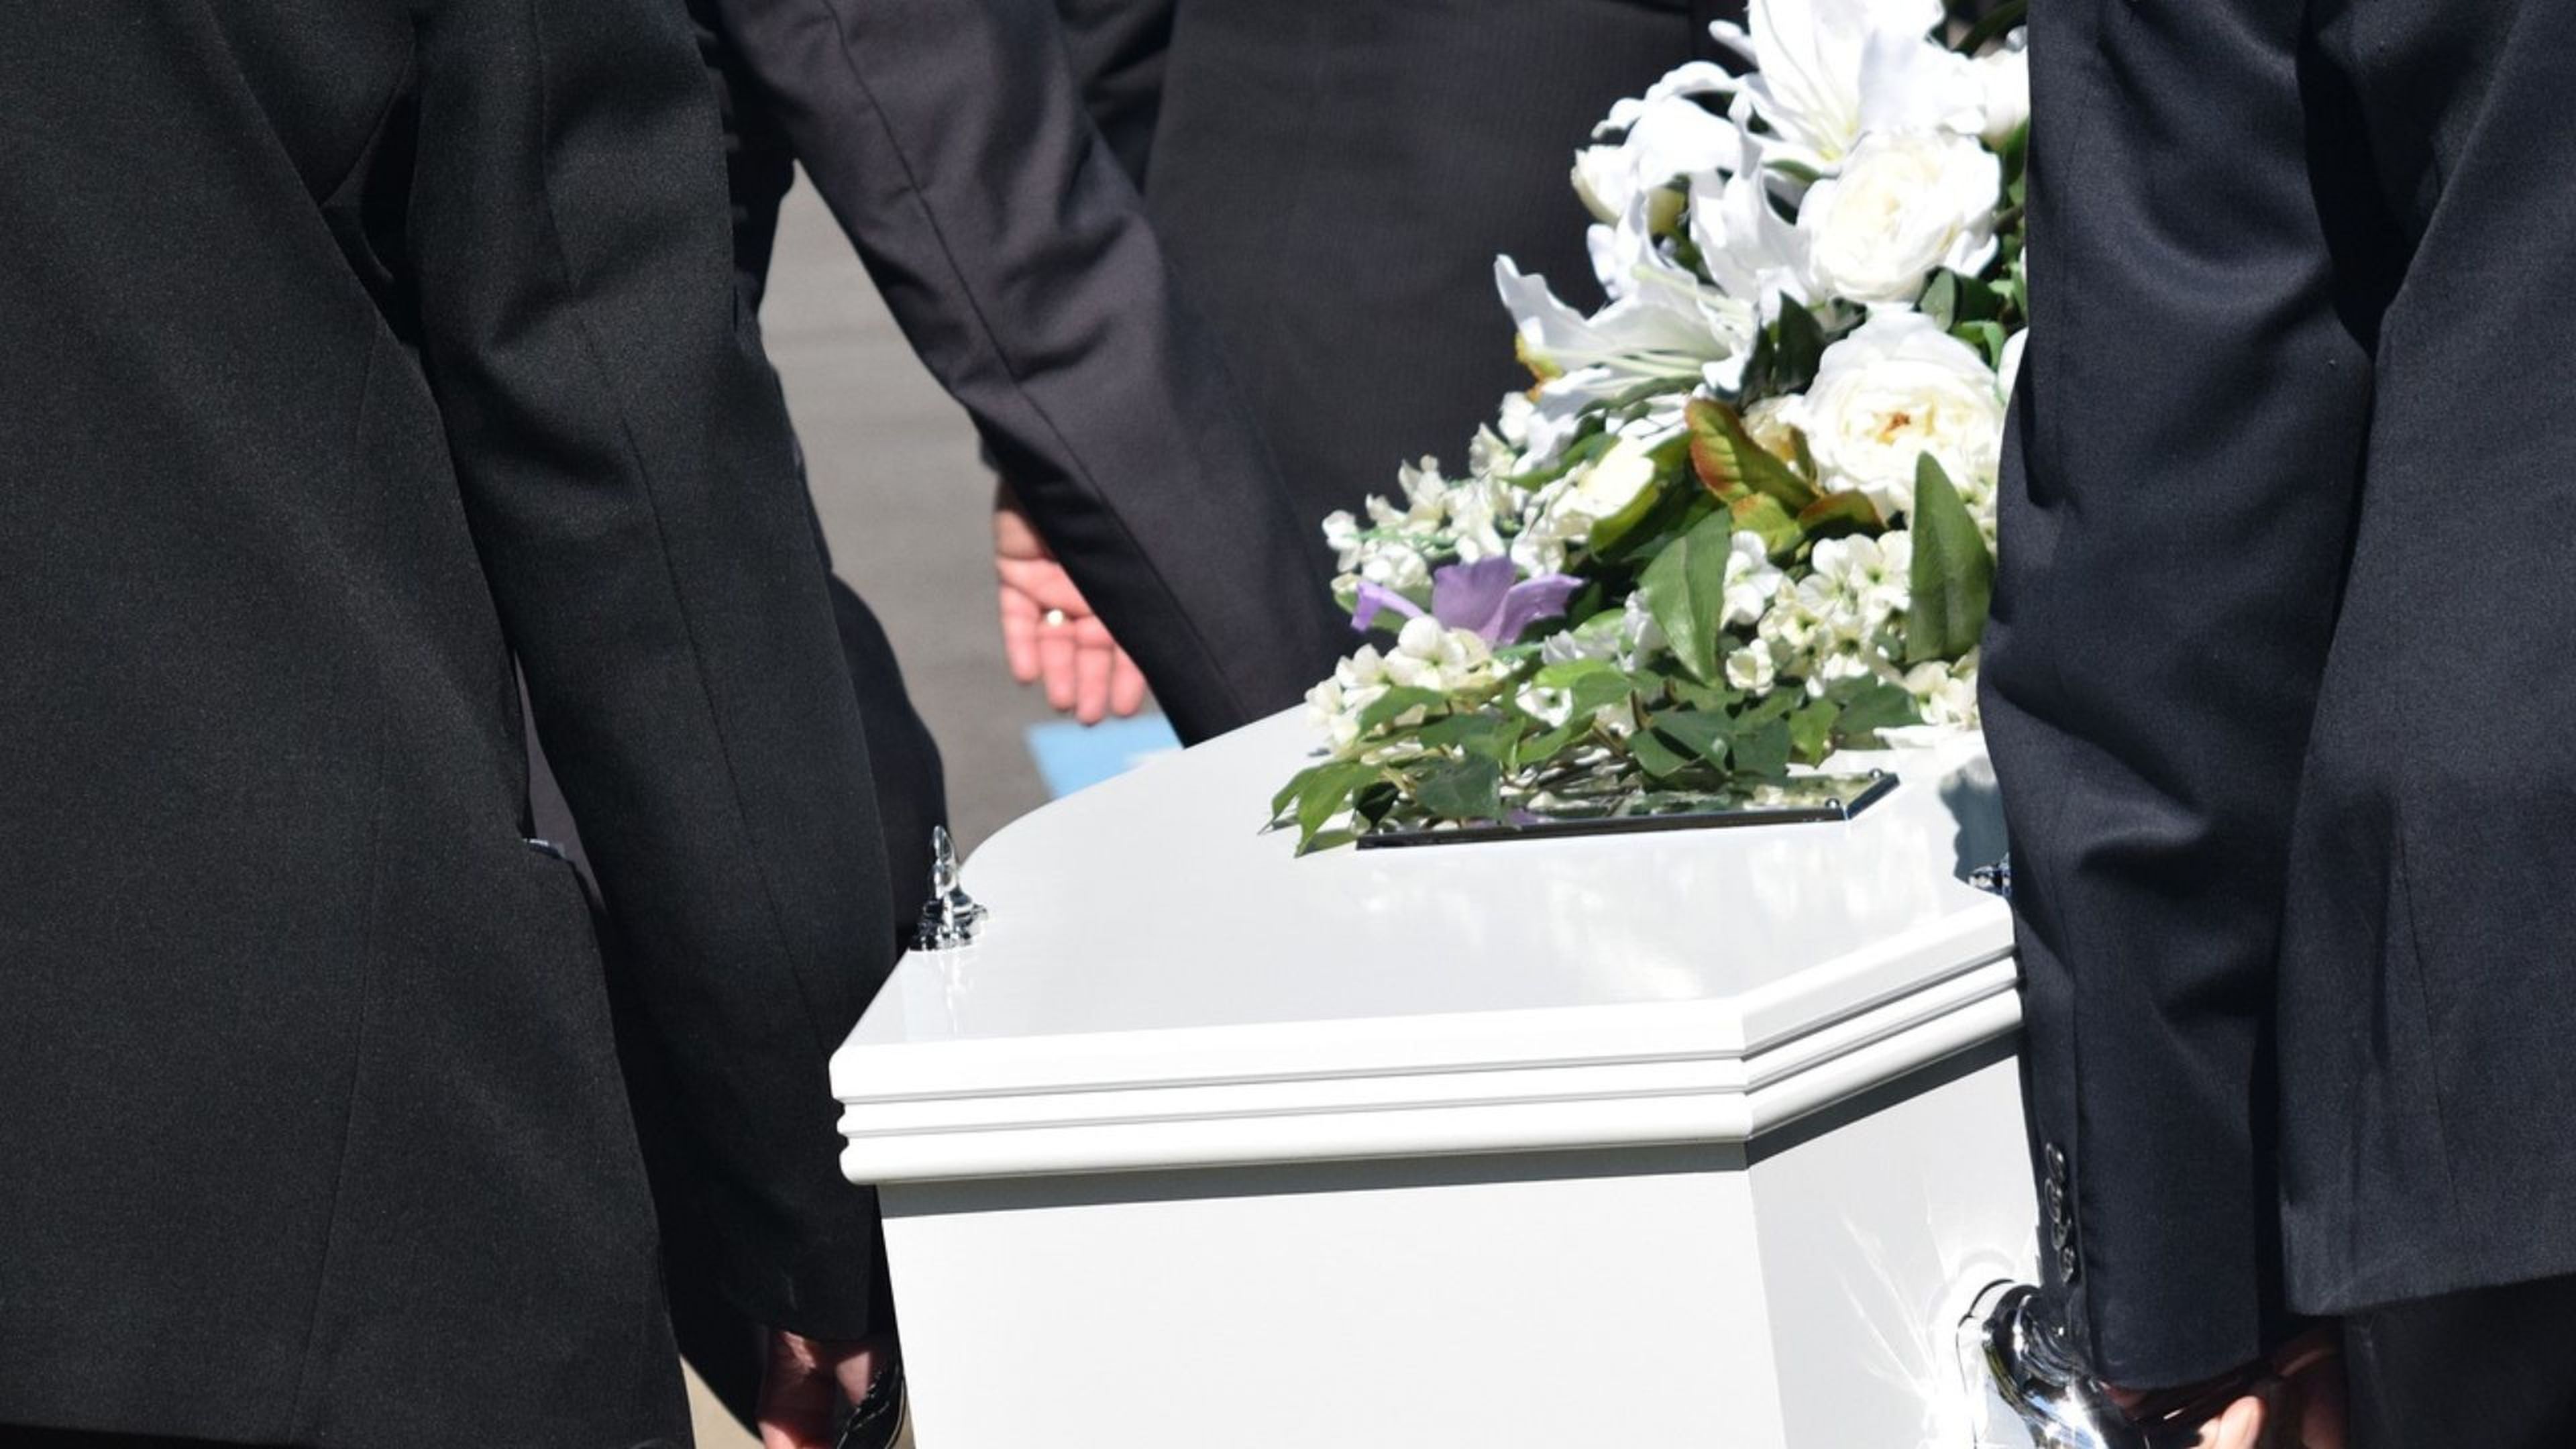 Varias personas llevan un ataud en un funeral.